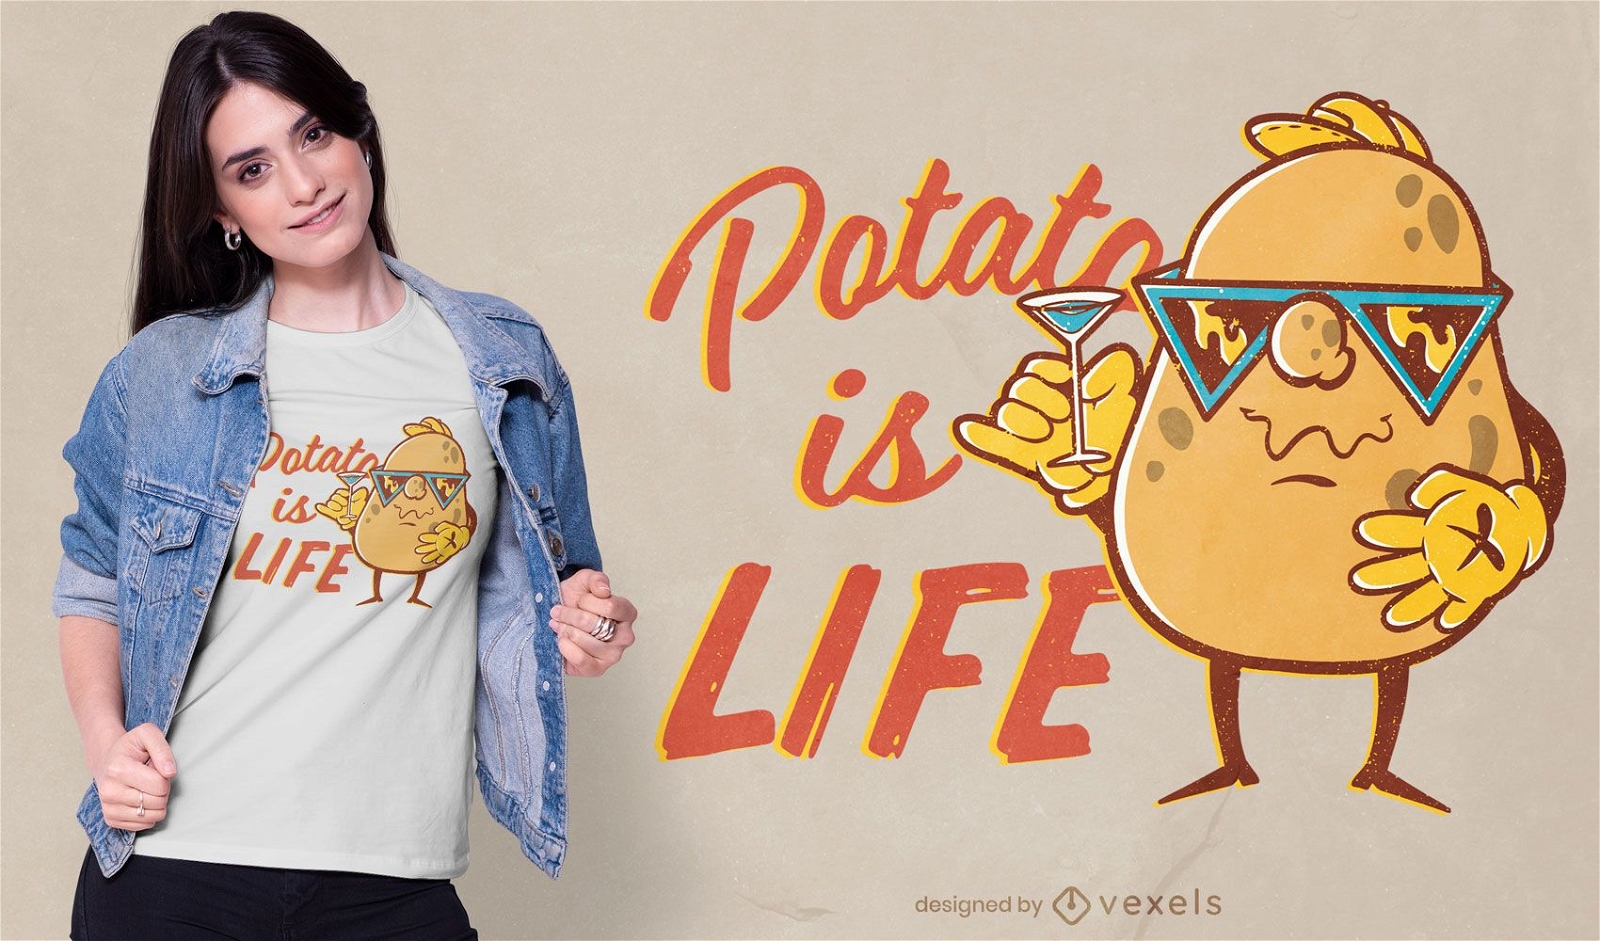 Batata ? o design de camisetas da vida